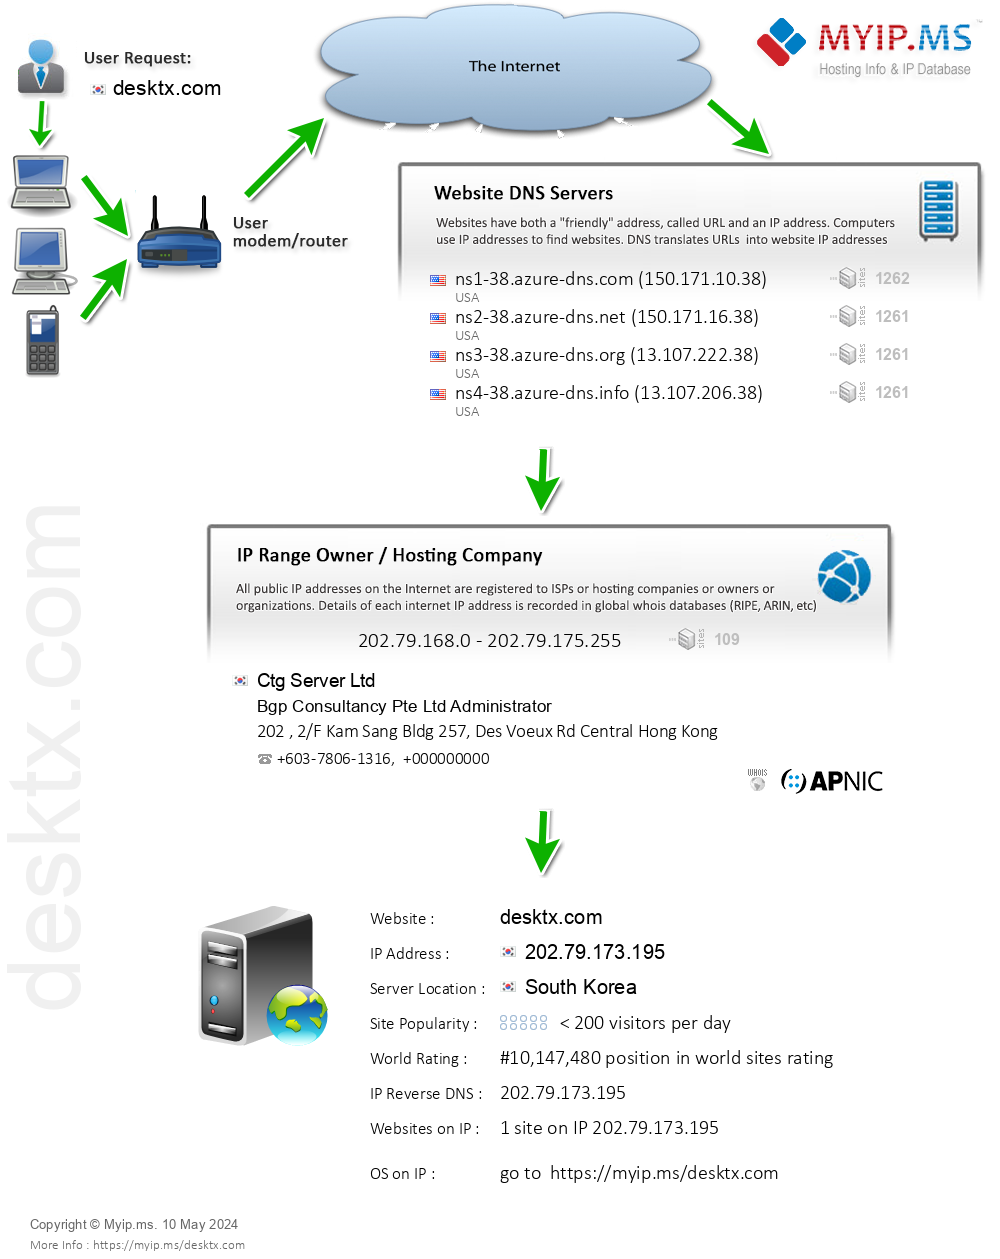 Desktx.com - Website Hosting Visual IP Diagram